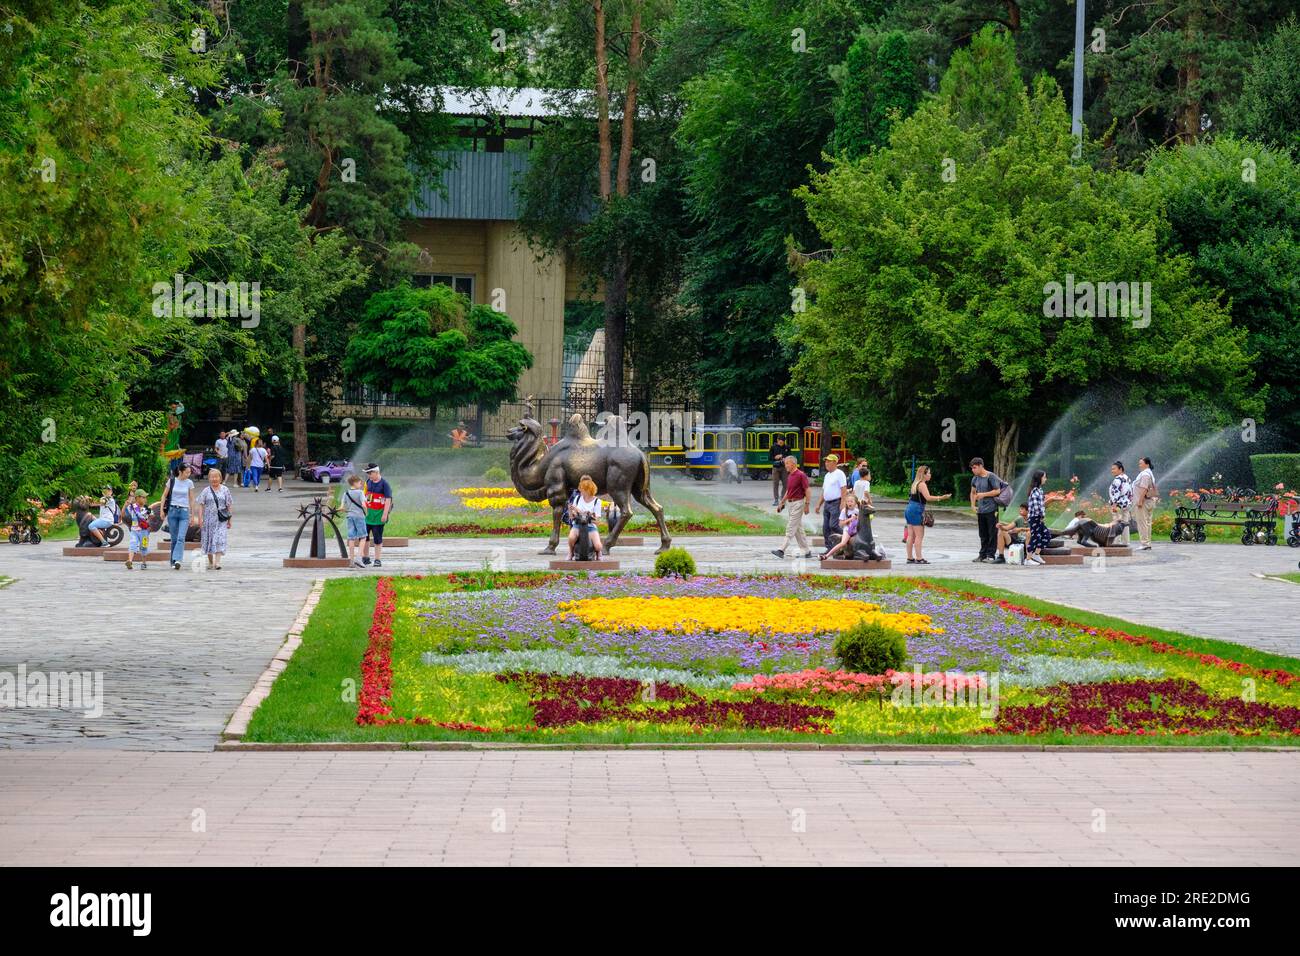 Kasachstan, Almaty. Blumenbeet am Eingang zum Central Park für Kultur und Erholung. Stockfoto